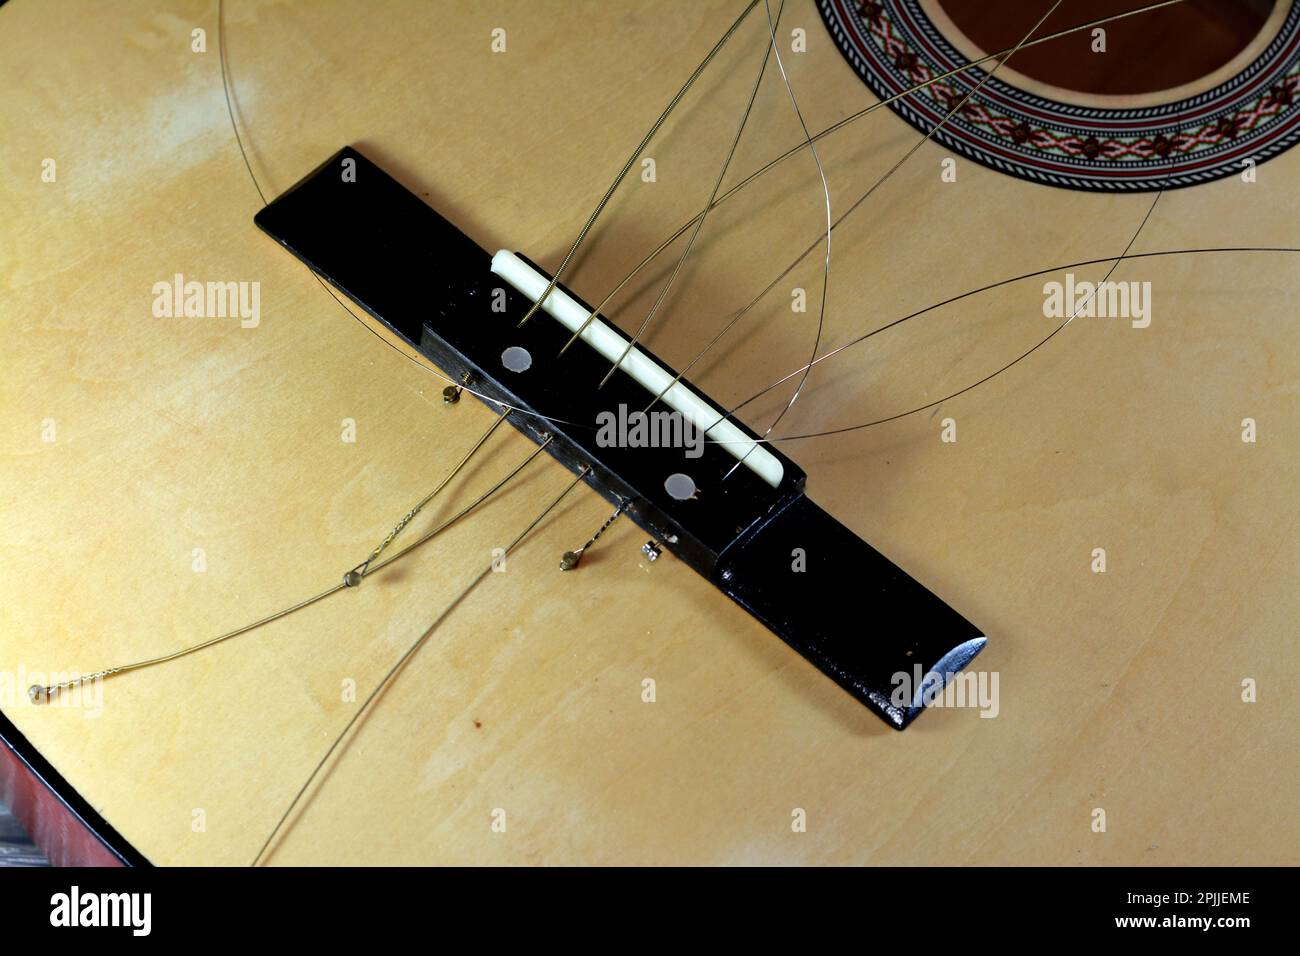 Eine zerbrochene alte Holzgitarre mit beschädigten Saiten, zerbrochenem Musikinstrument, unbefestigter beschädigter Gitarre mit geschnittenem Akkord und Holz, selec Stockfoto